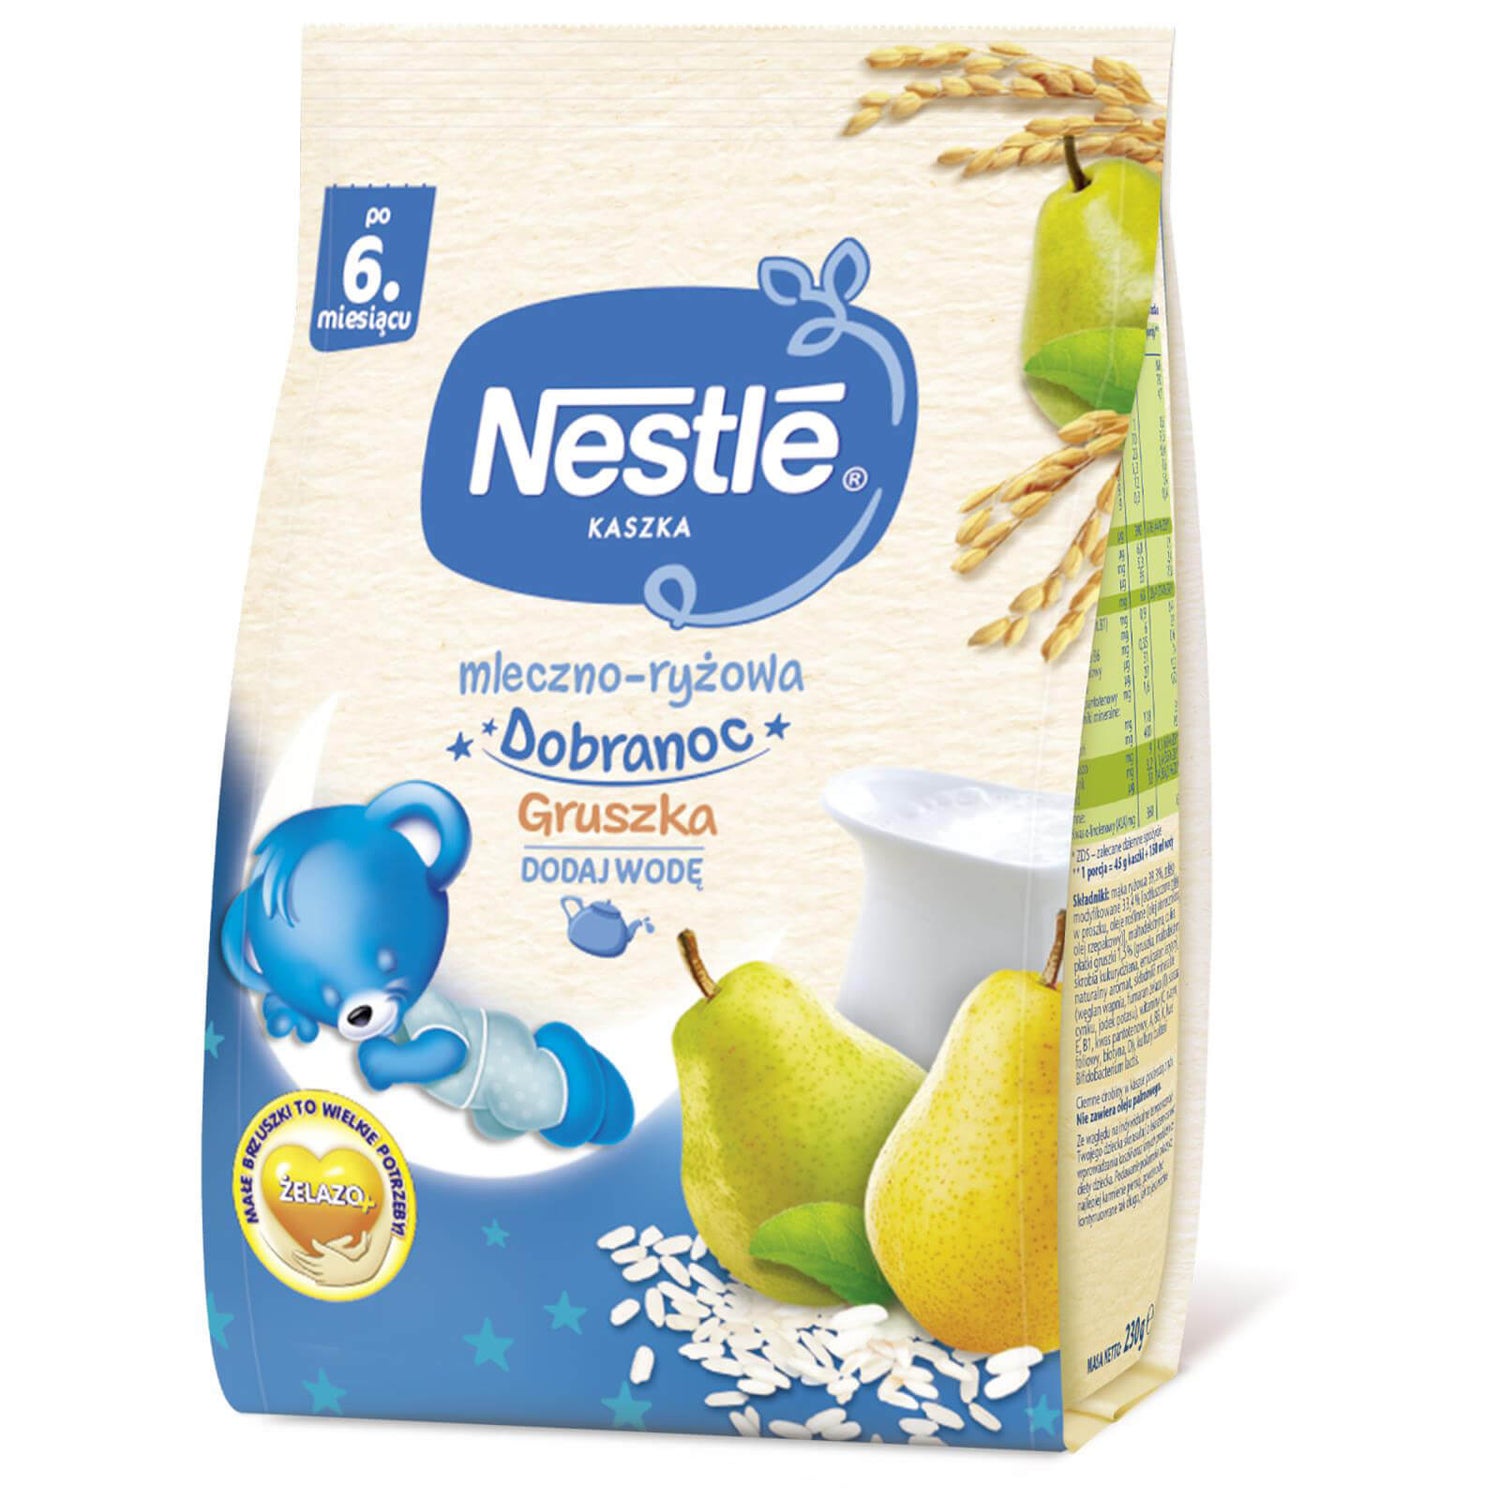 Nestlé Kaszka mleczno-ryżowa Dobranoc Gruszka- 230g